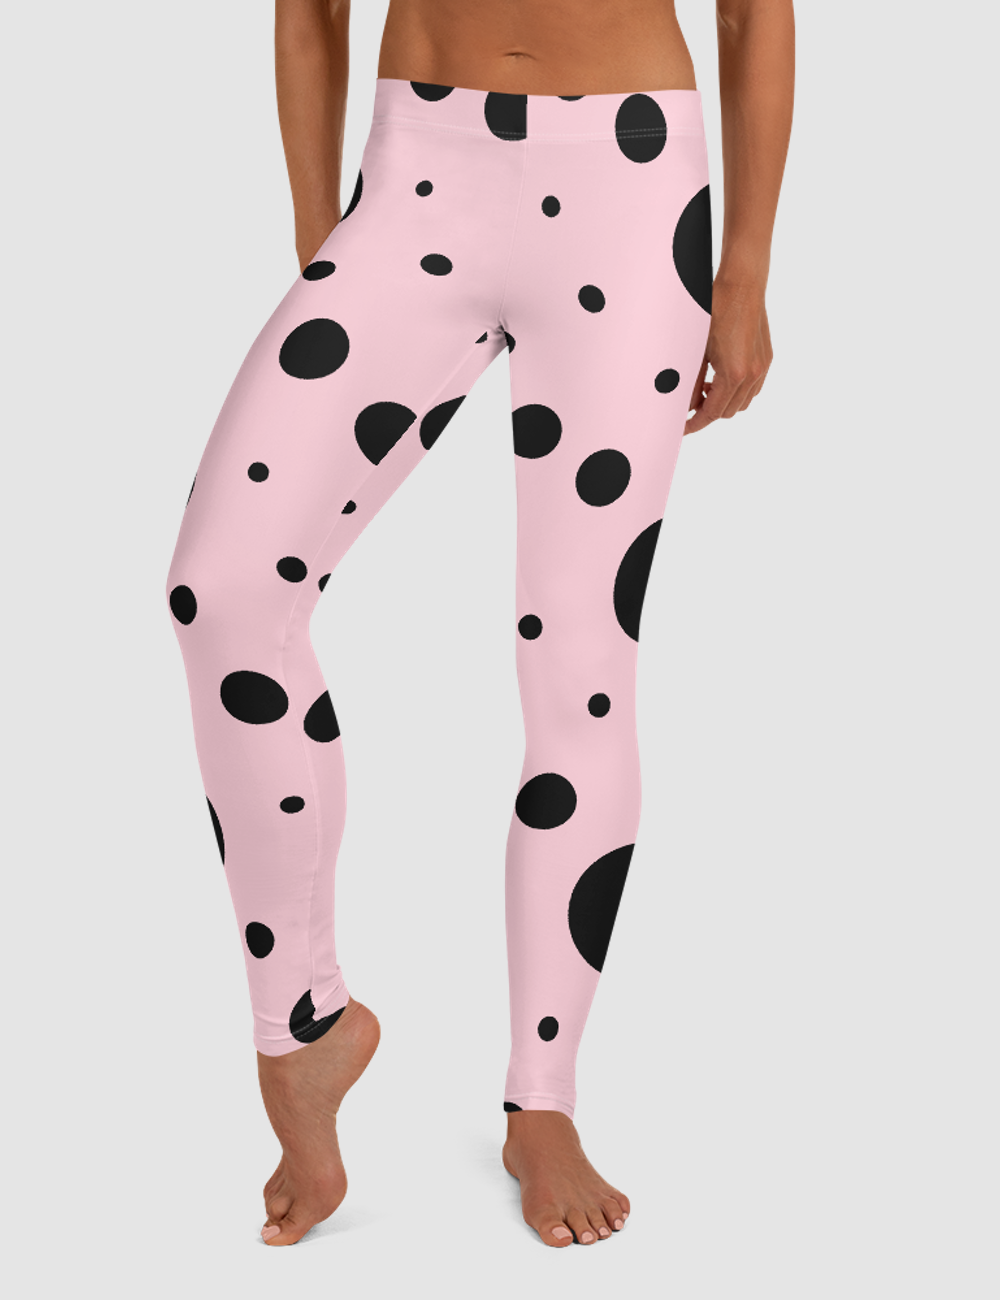 Pink Ladybug | Women's Standard Yoga Leggings OniTakai